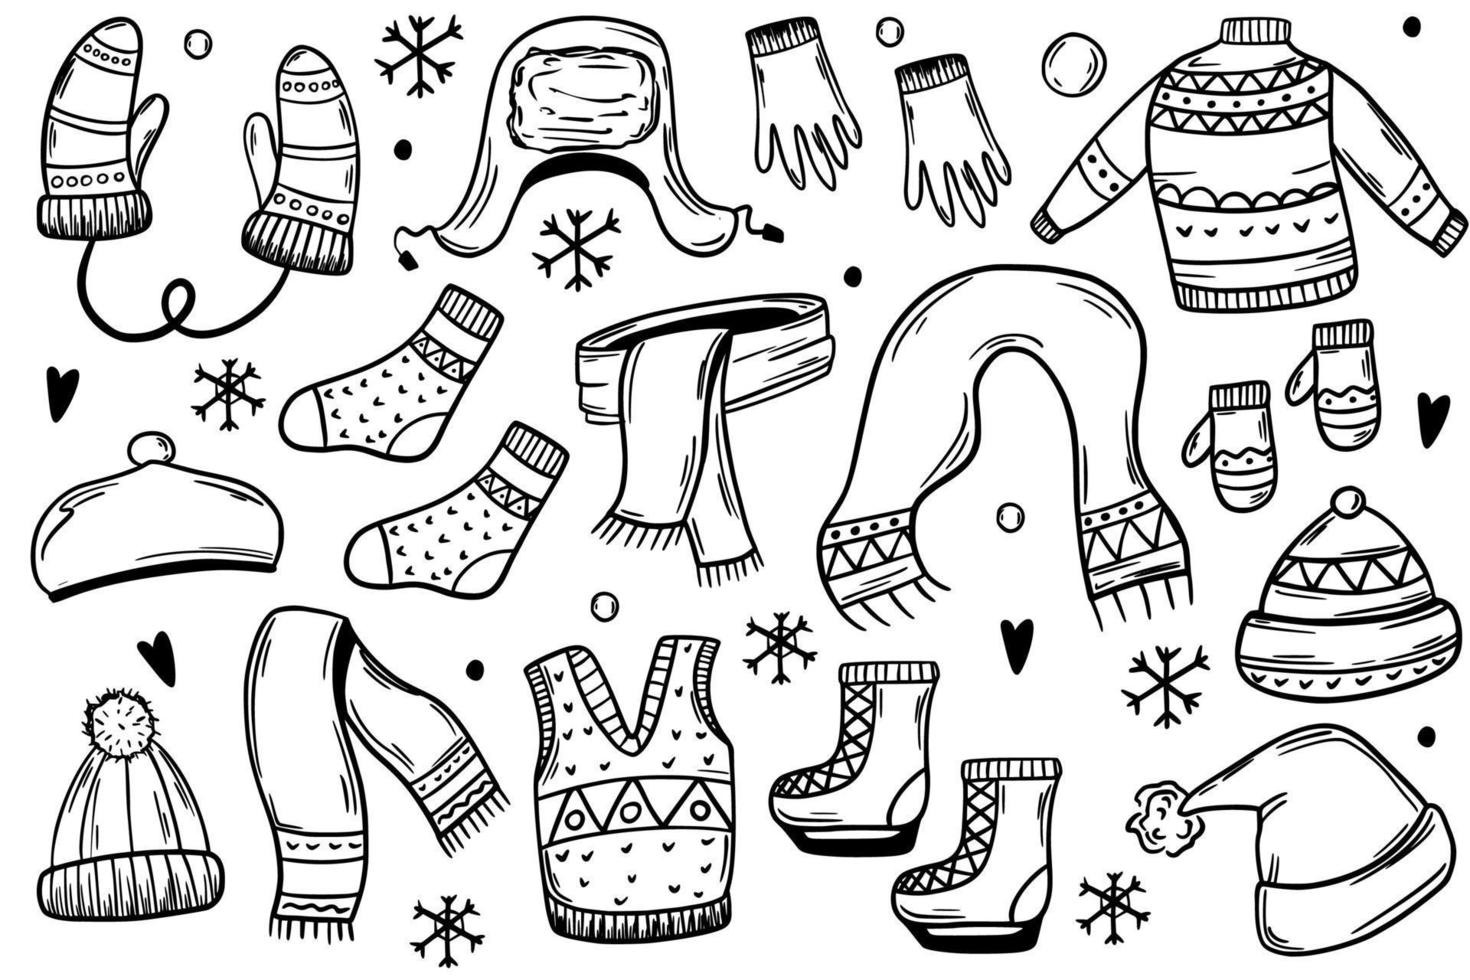 Winterkleidung, Mützen, Handschuhe, Schlittschuhe, Fäustlinge. warme Kleidung. vektorillustration im skizzenstil. vektor